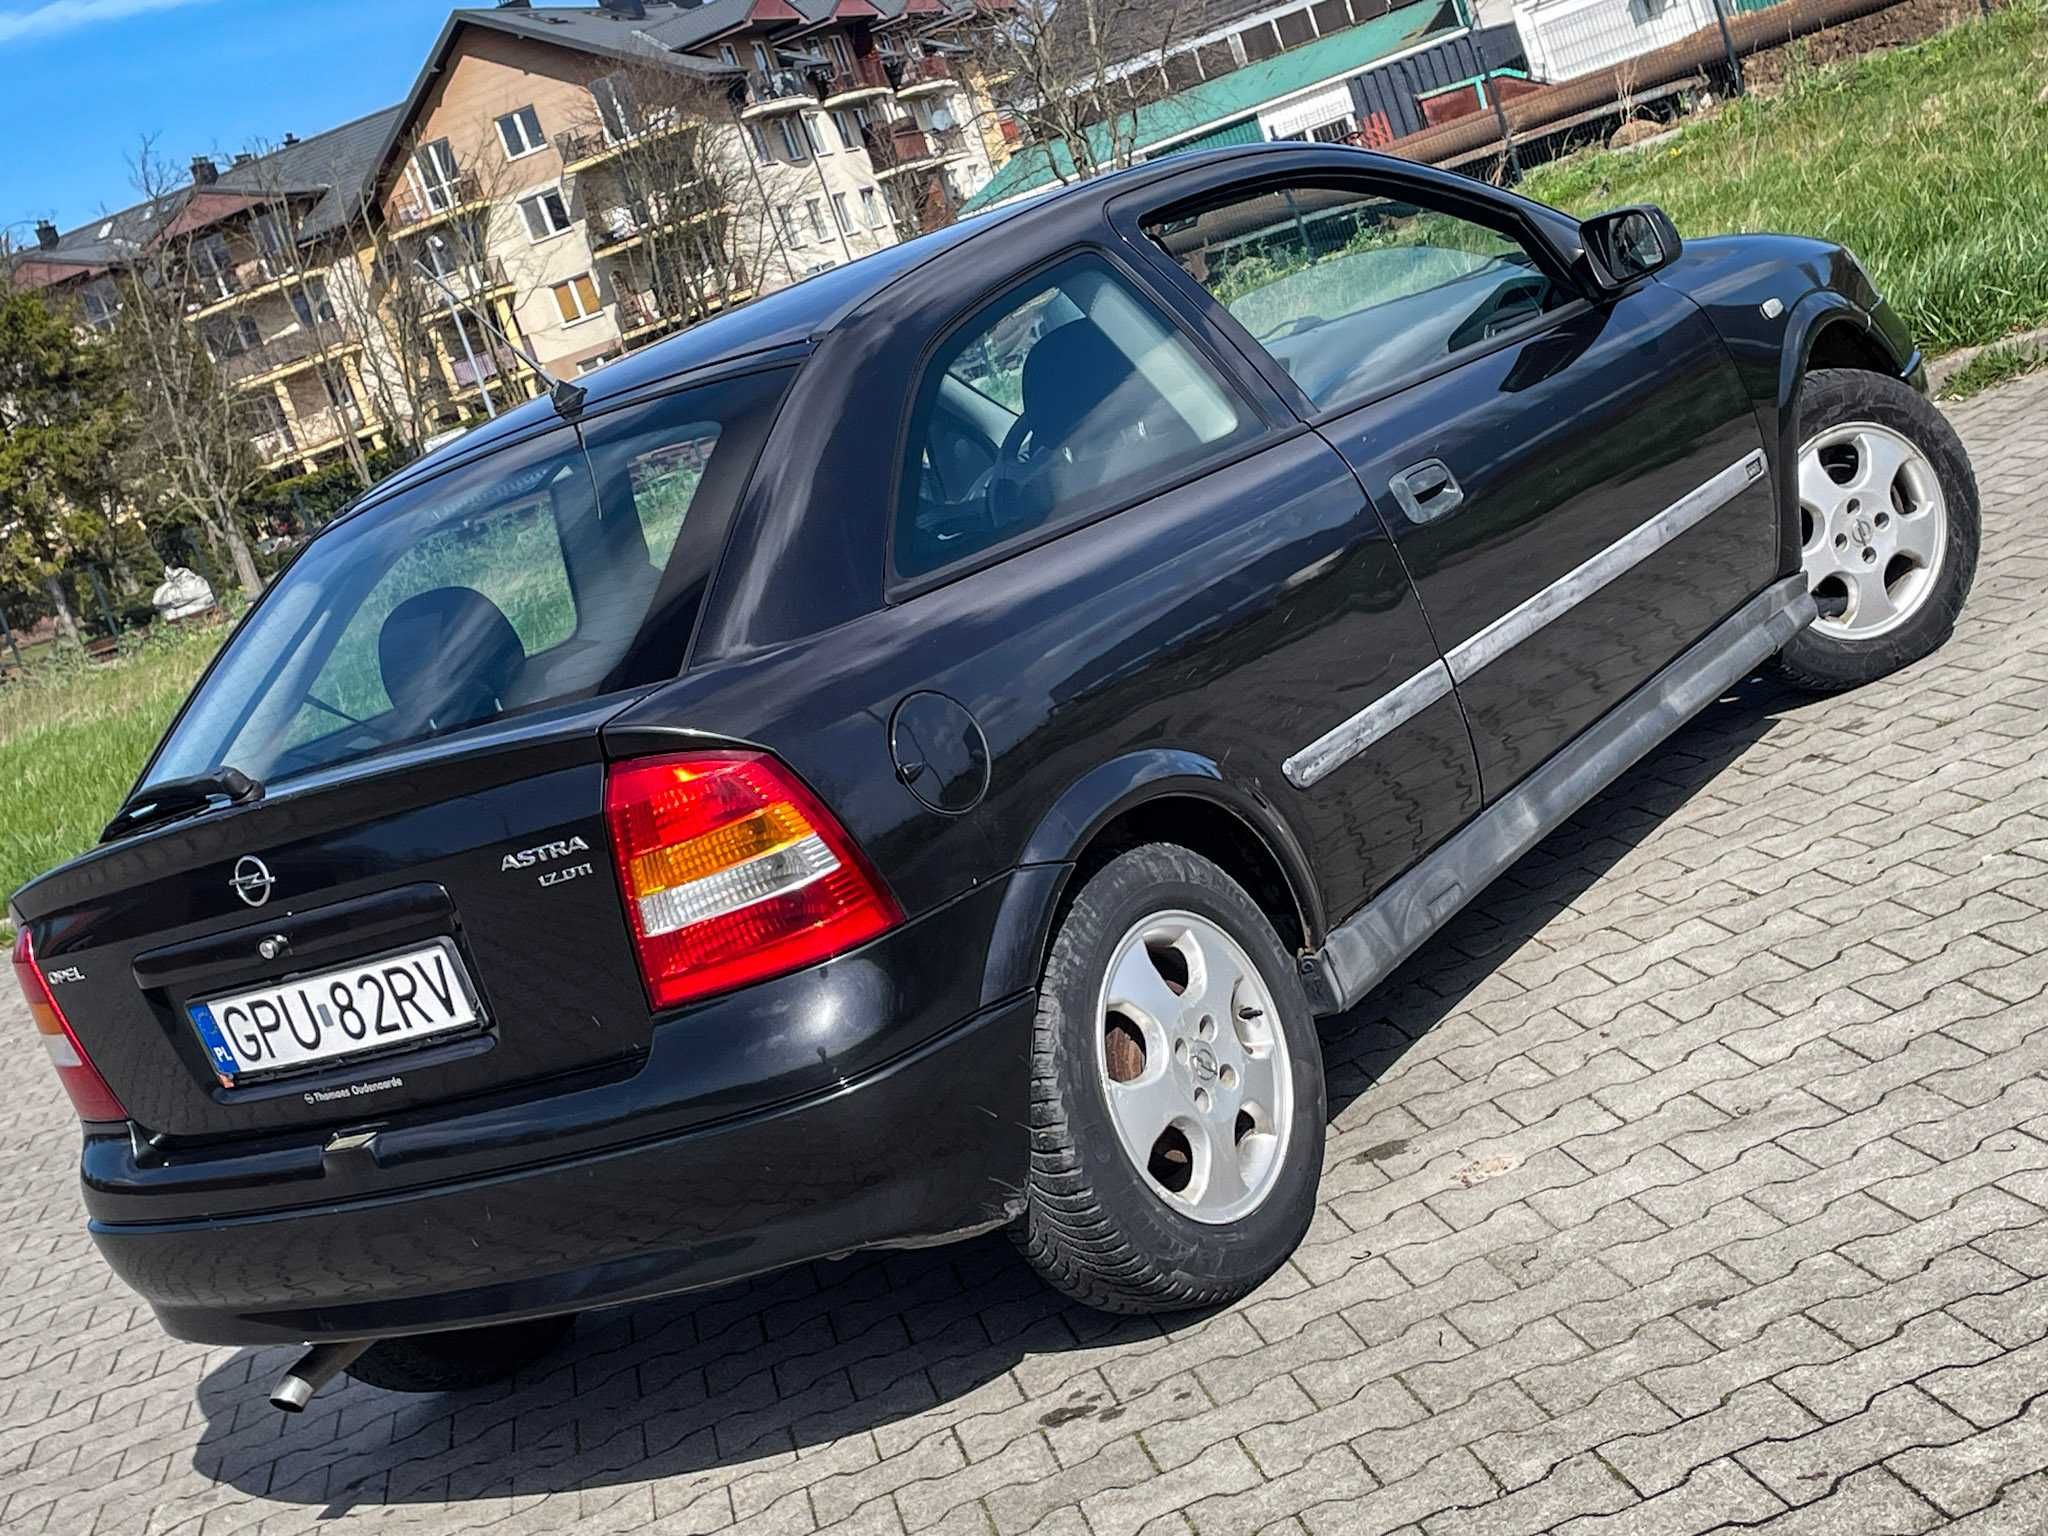 Opel Astra G 1.7 TD 75KM 2002r. 330 tys.km - Możliwa zamiana! Bez rdzy